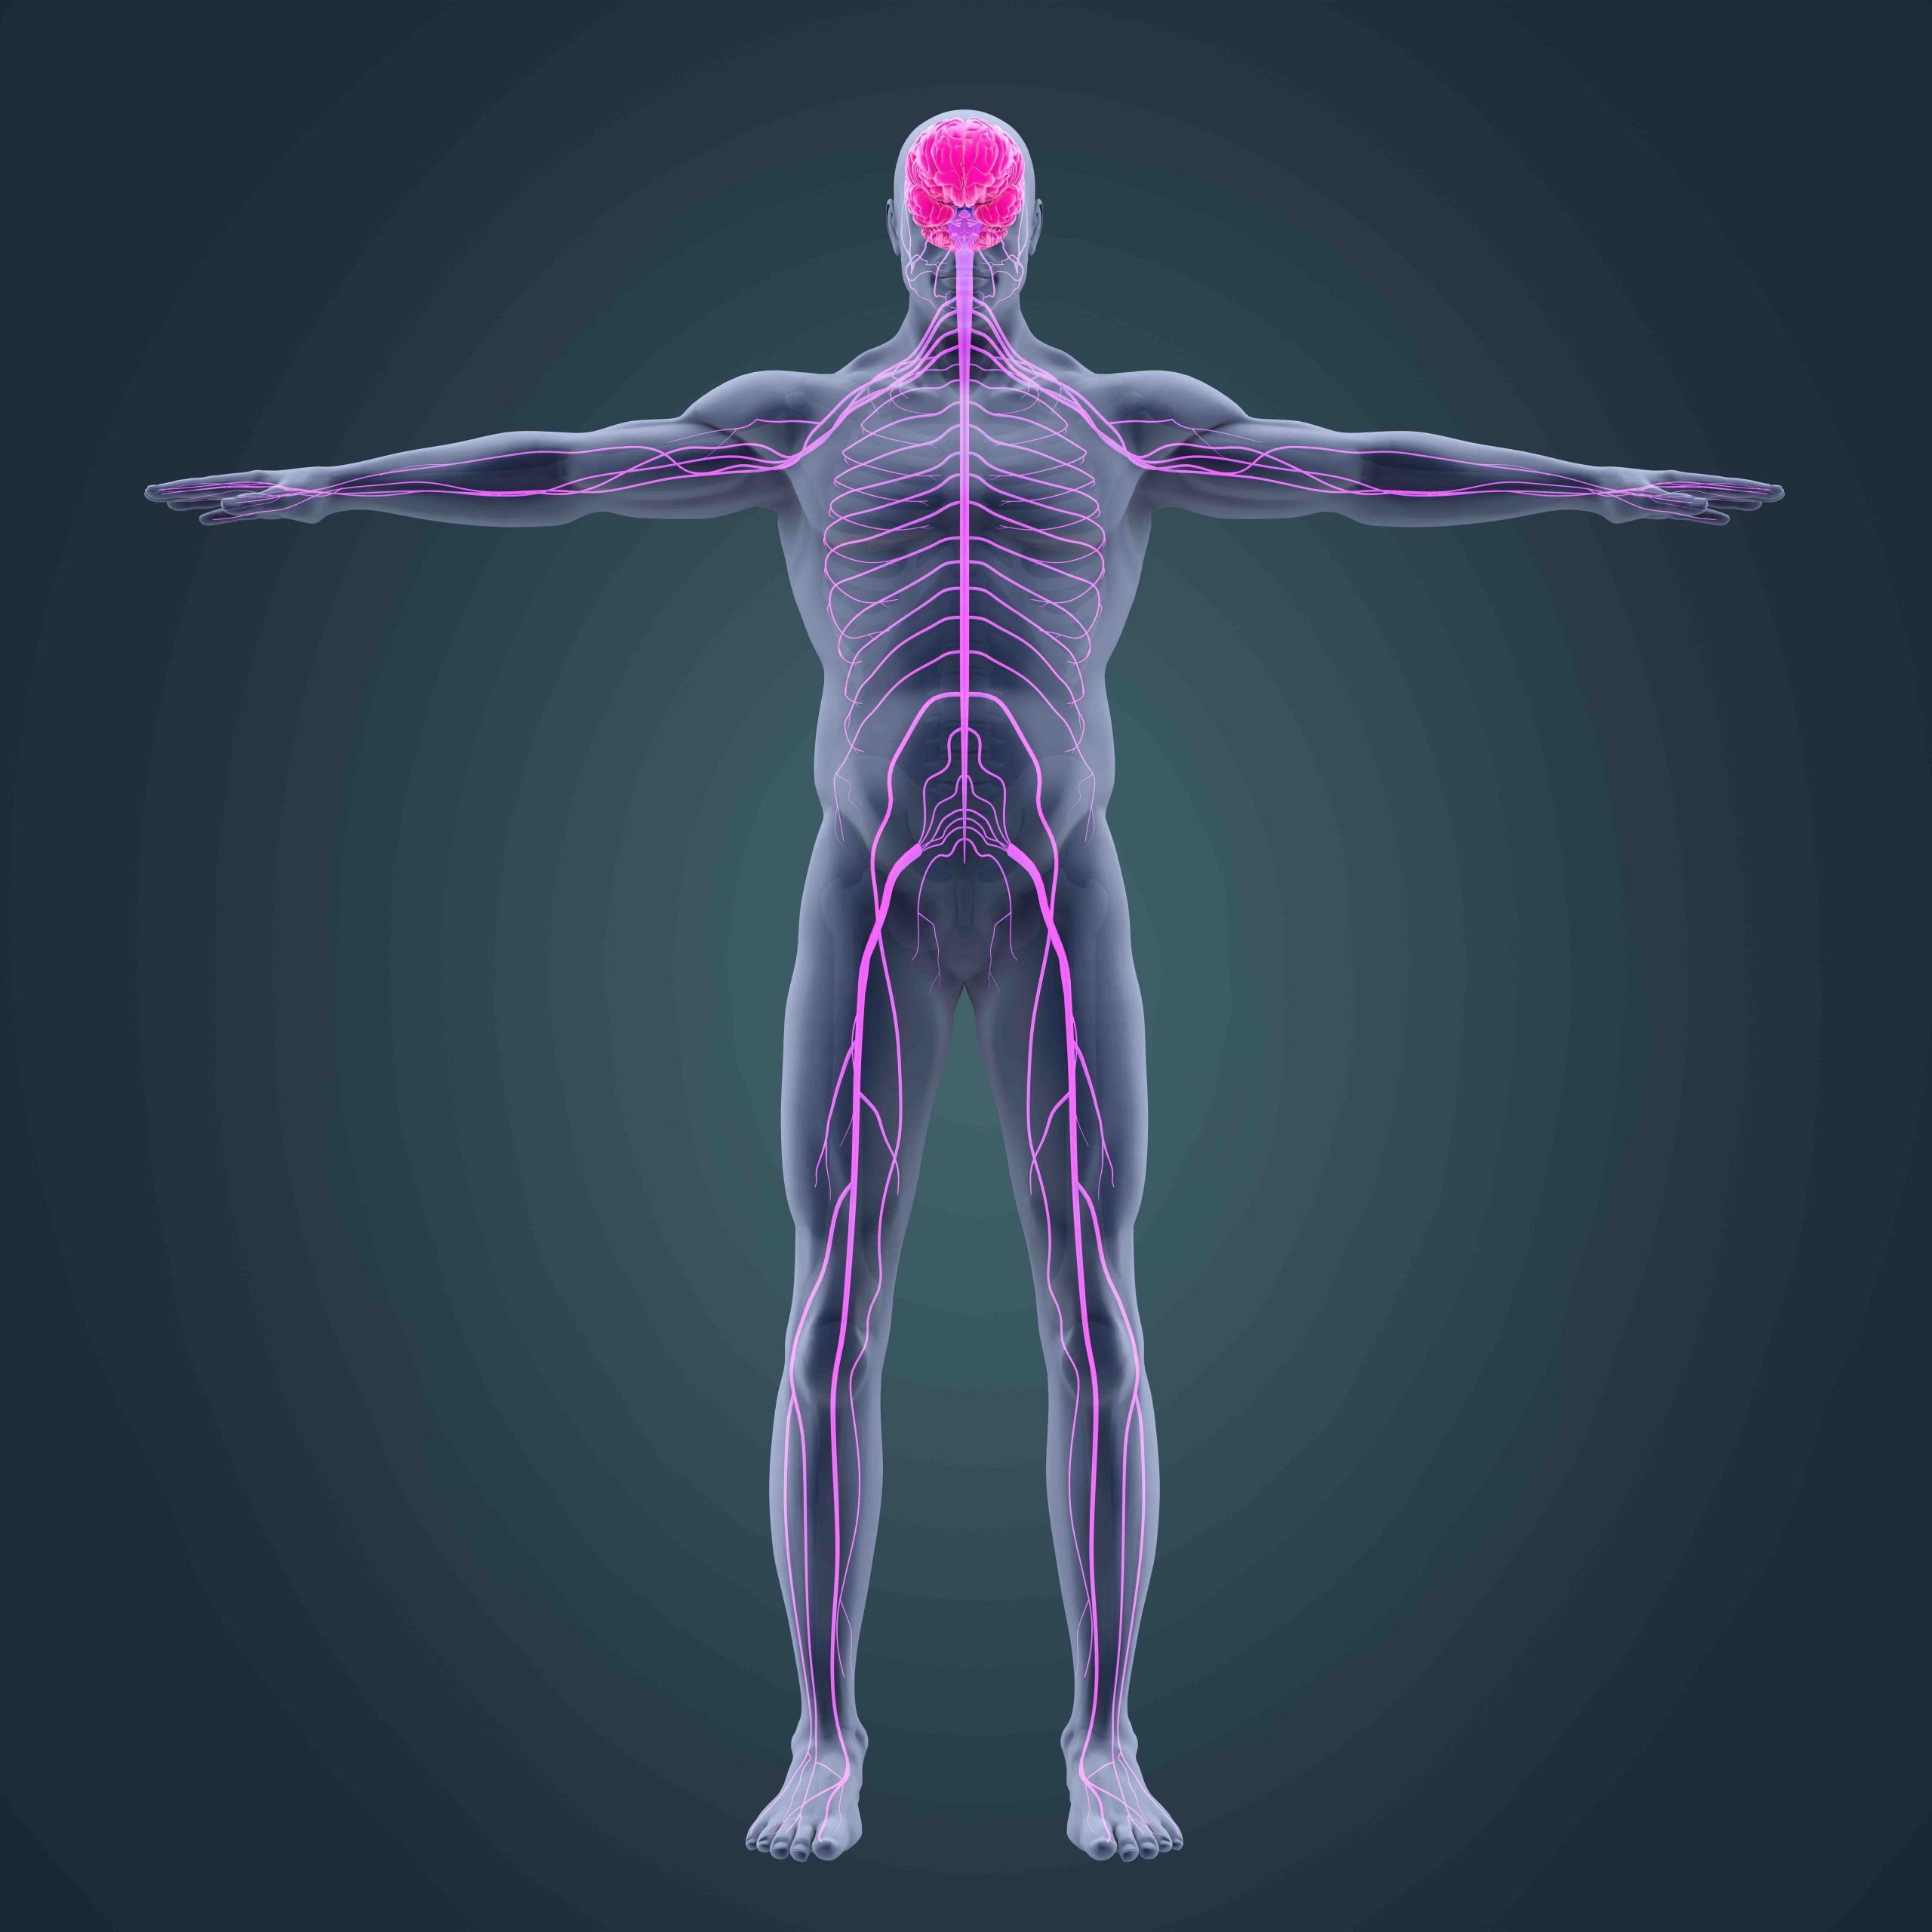 nervous system image